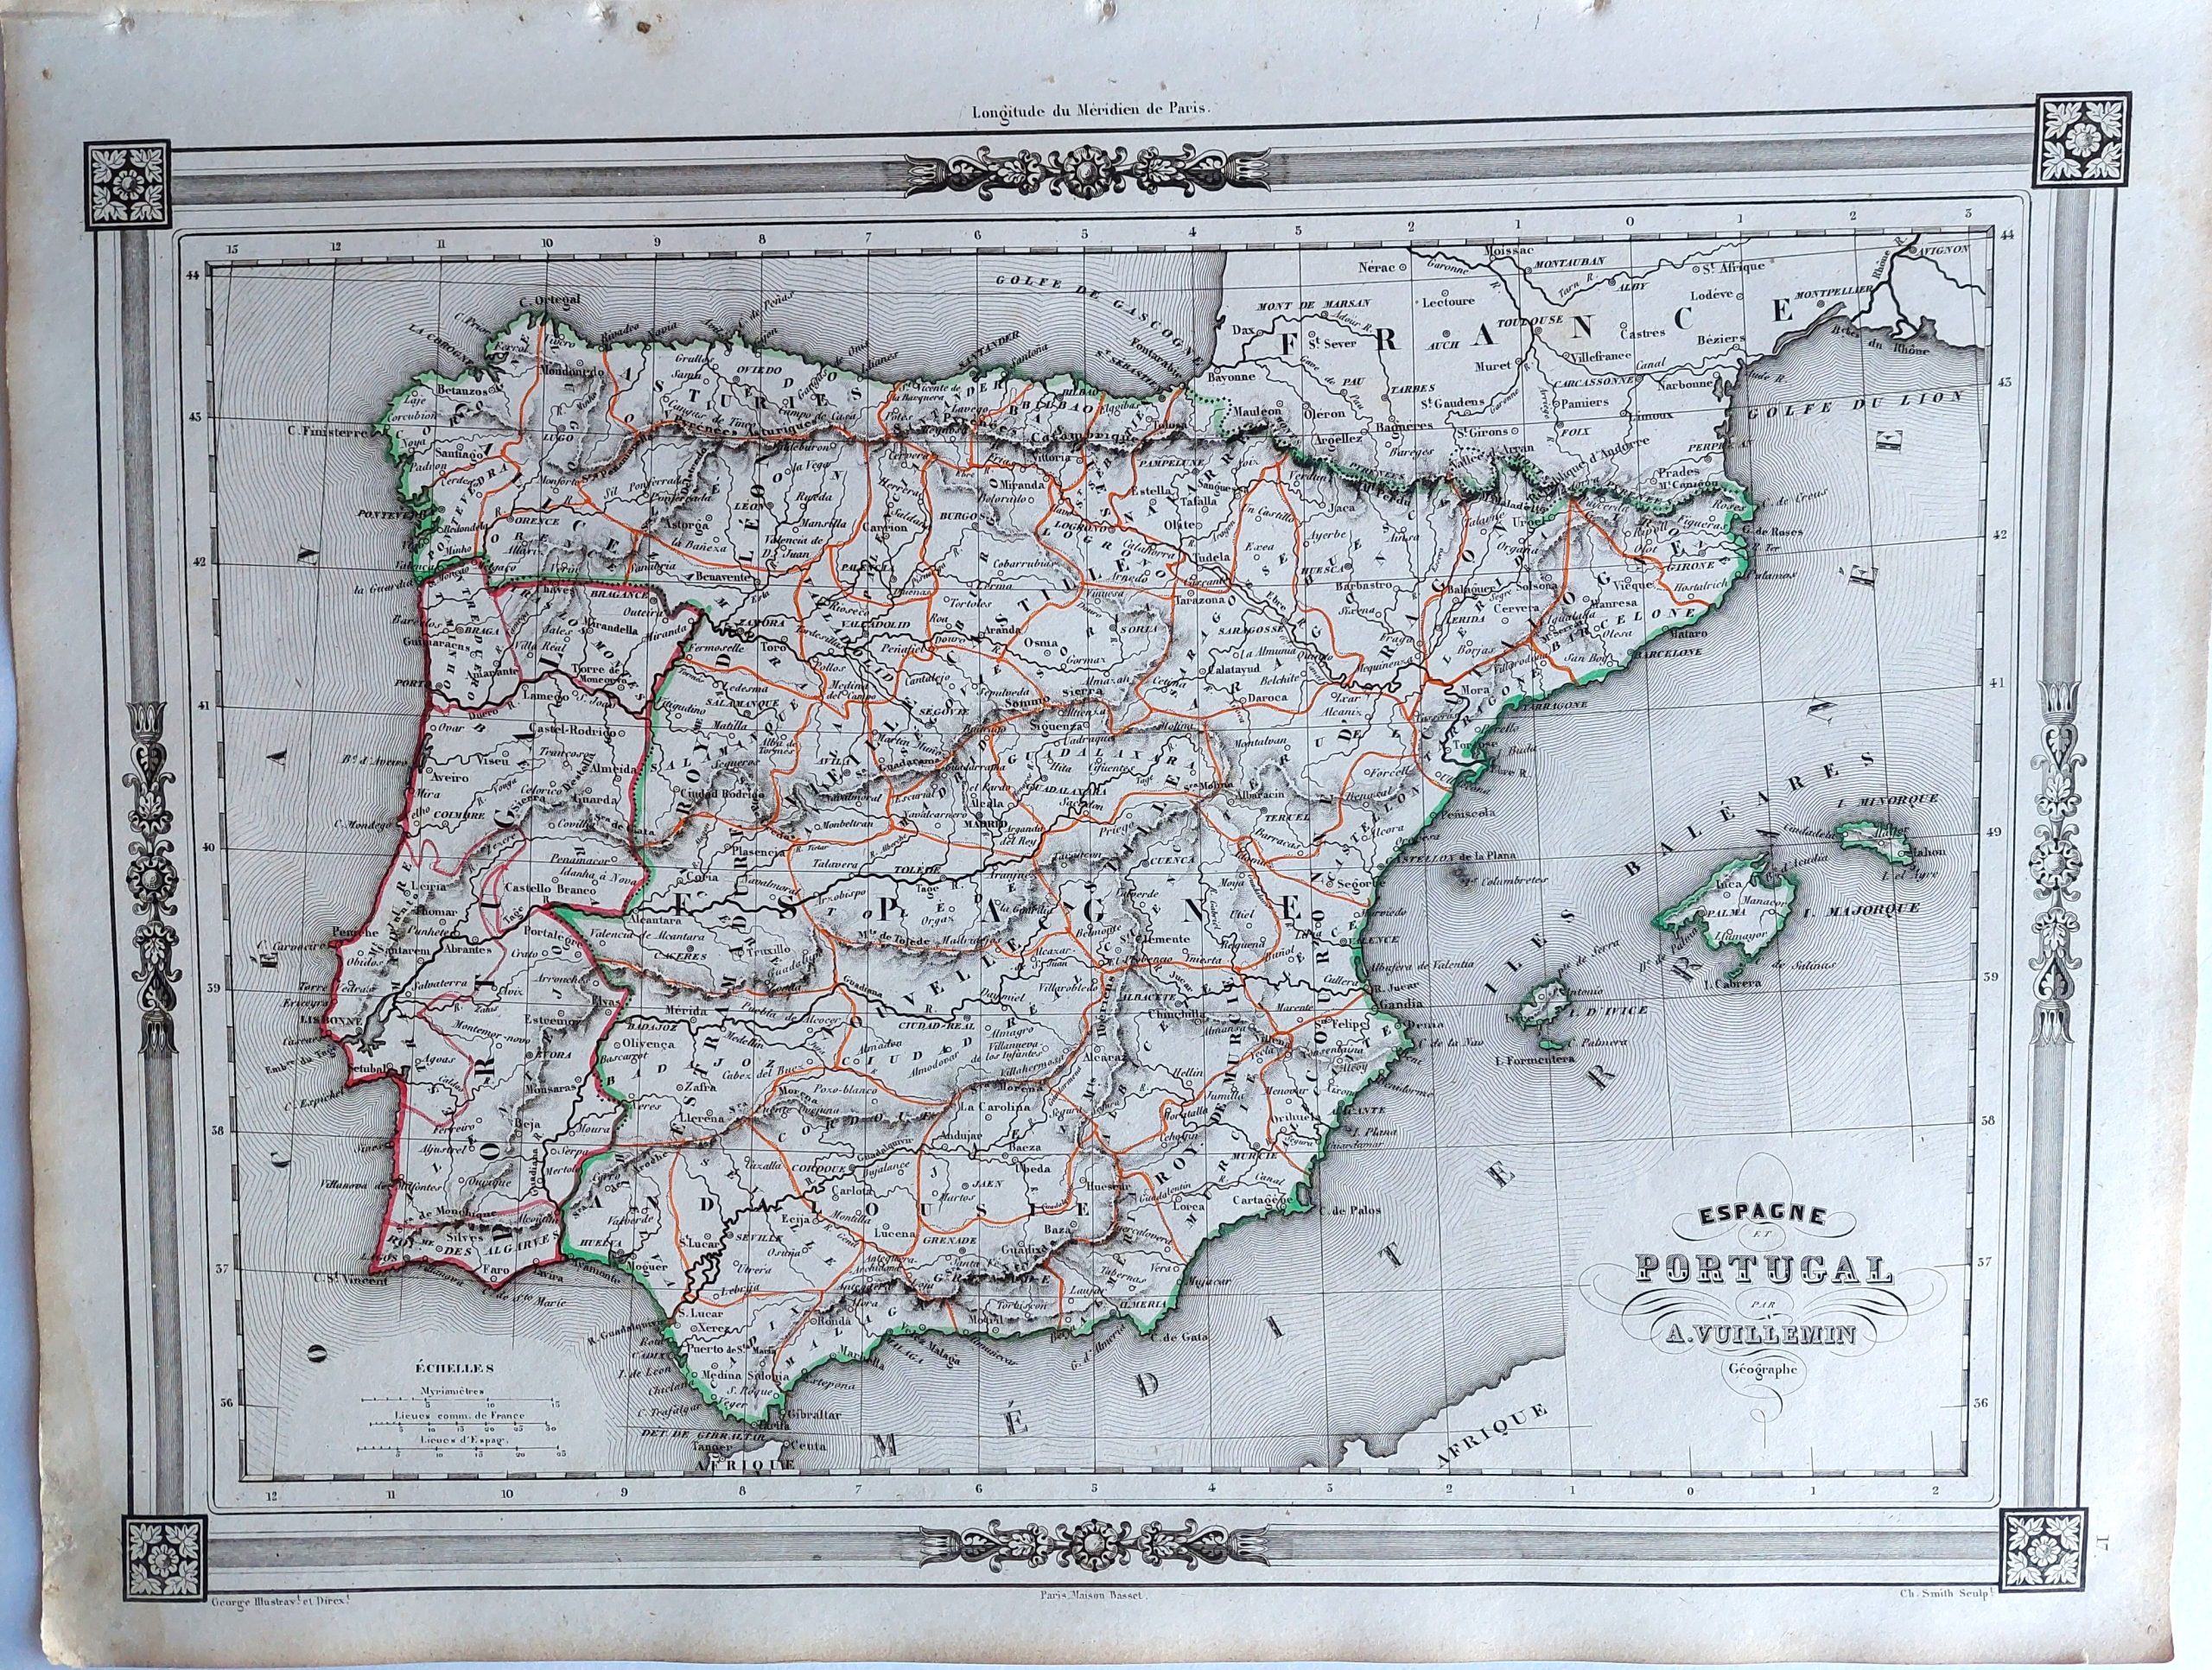 Espagne et Portugal par A. Vuillemin Geographe